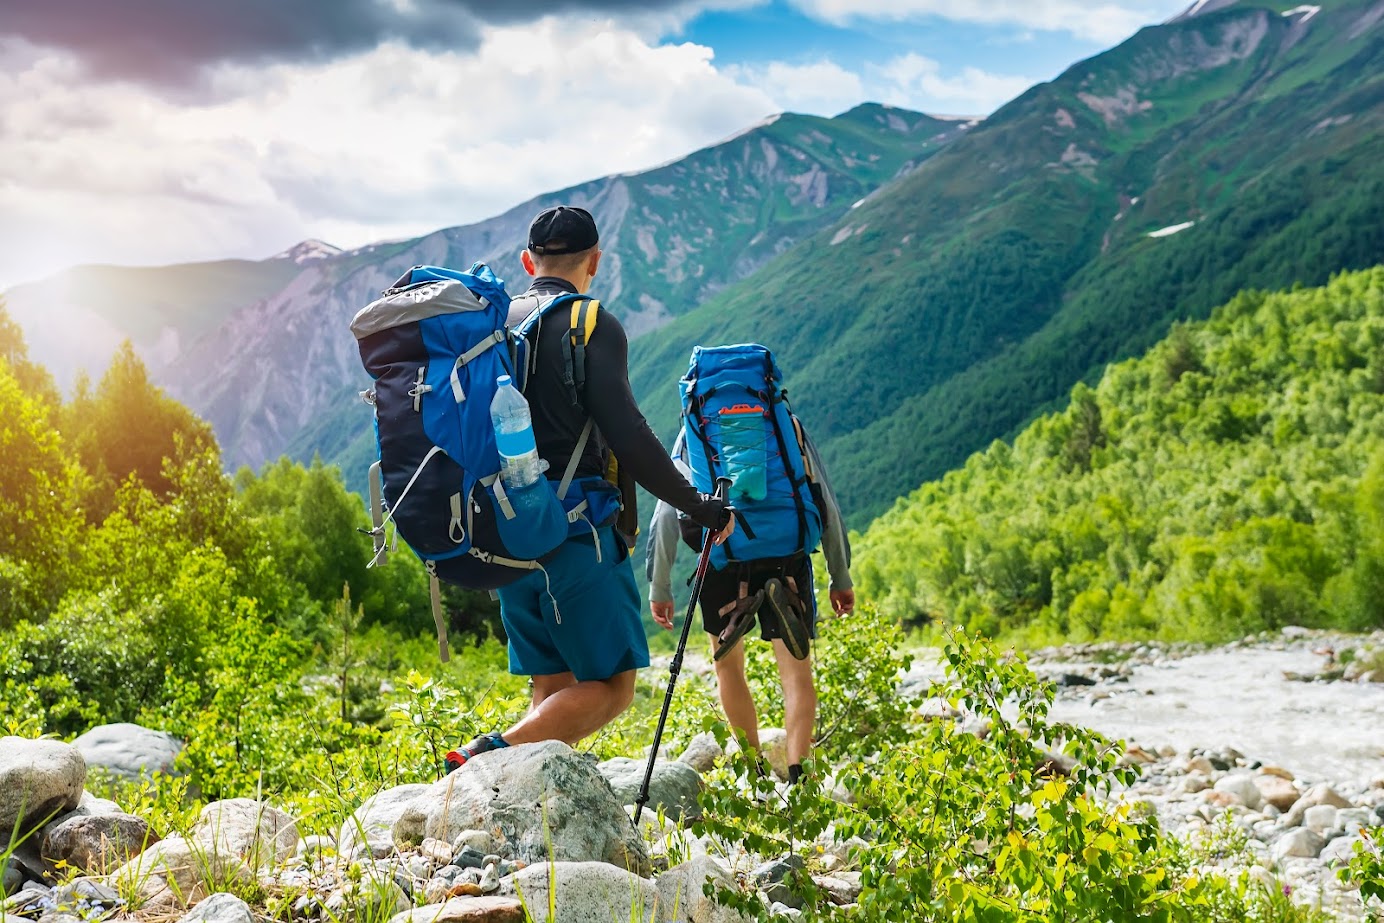 Dành cho tín đồ mê phượt - Top 5 cung đường trekking vừa “phê” vừa mạo hiểm 